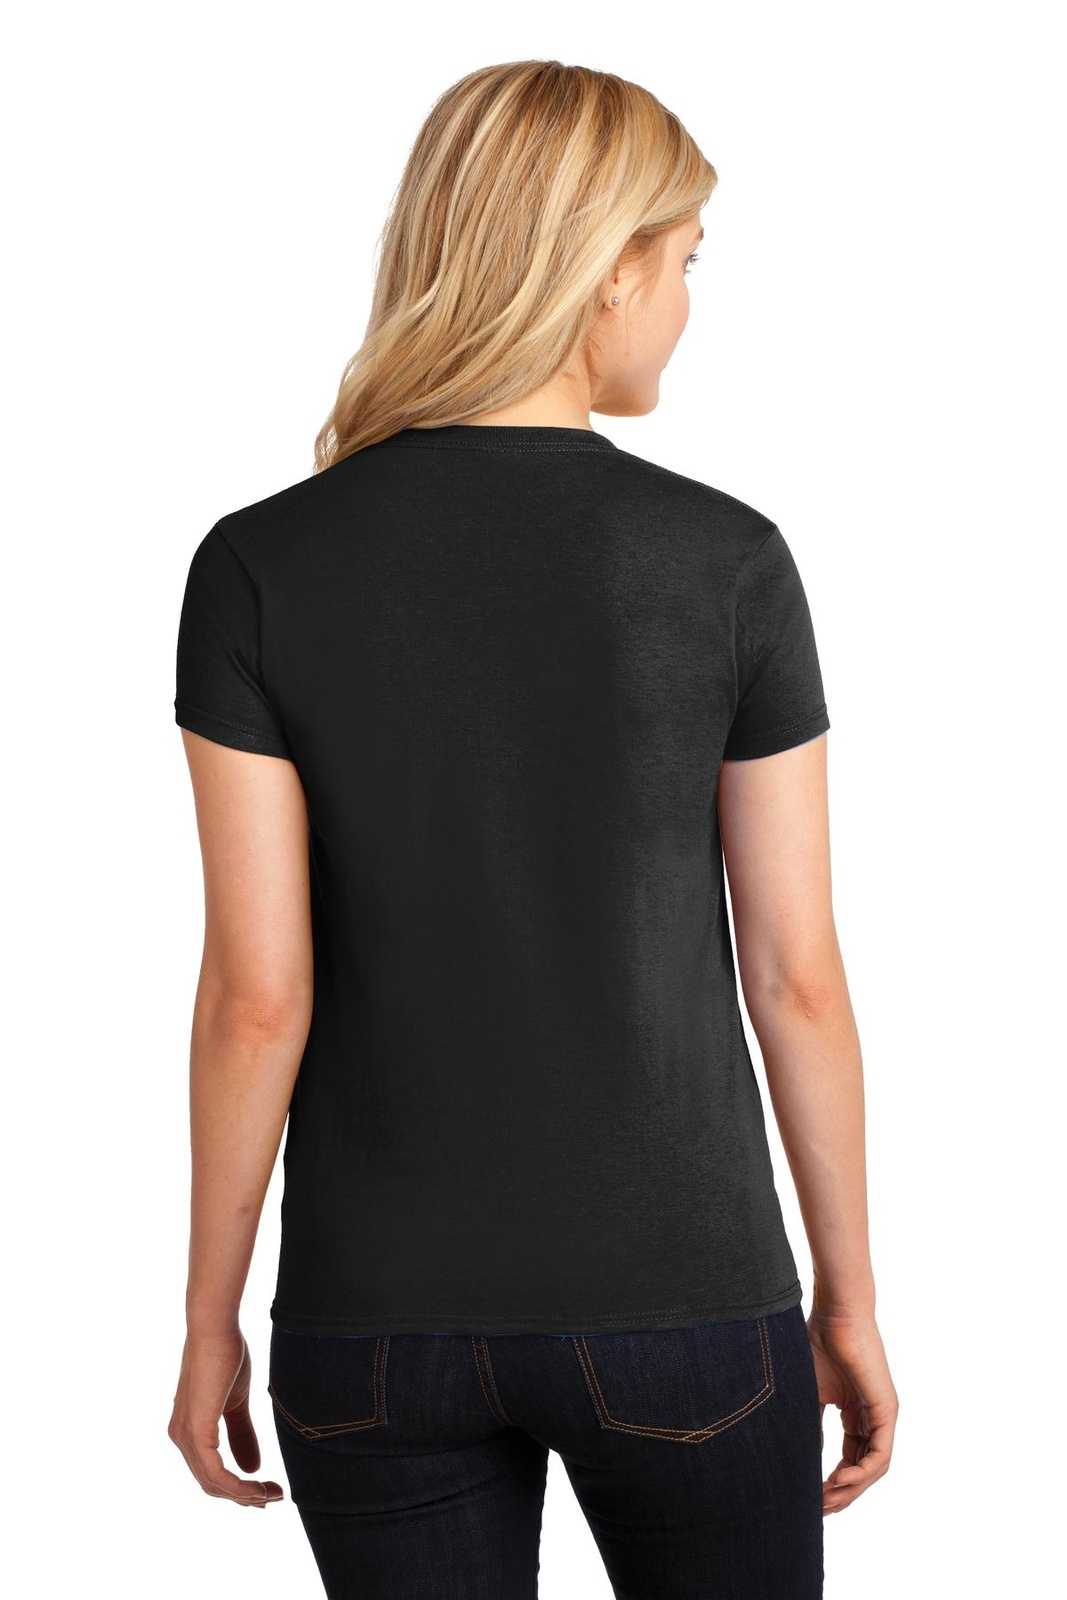 Gildan 5000L Ladies Heavy Cotton 100% Cotton T-Shirt - Black - HIT a Double